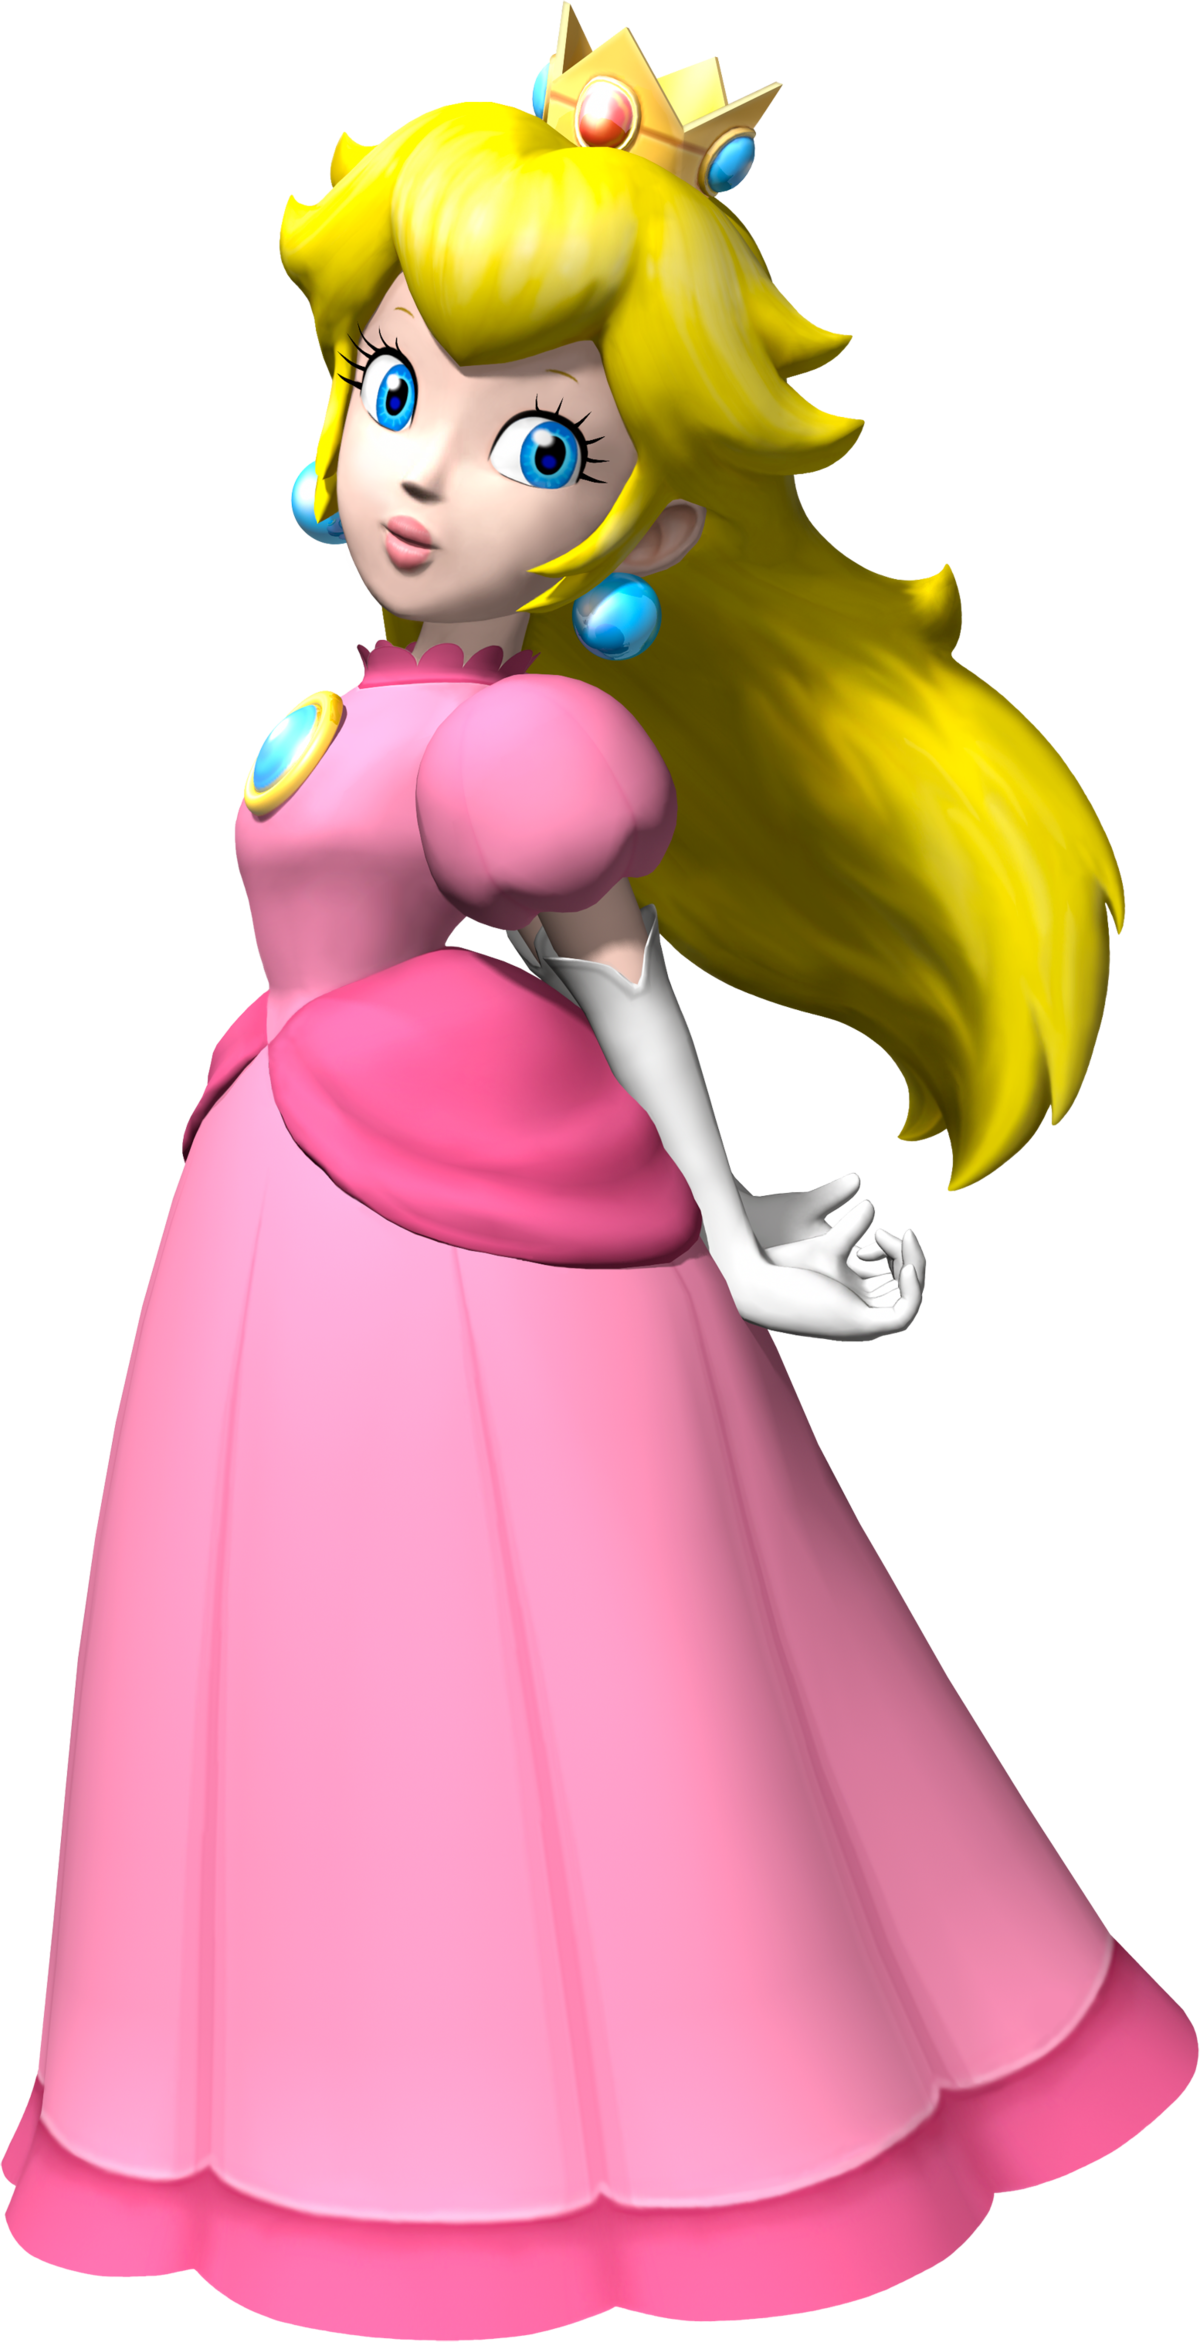 File:Princess Peach Hair Flip Artwork.png - Super Mario Wiki, the Mario ...